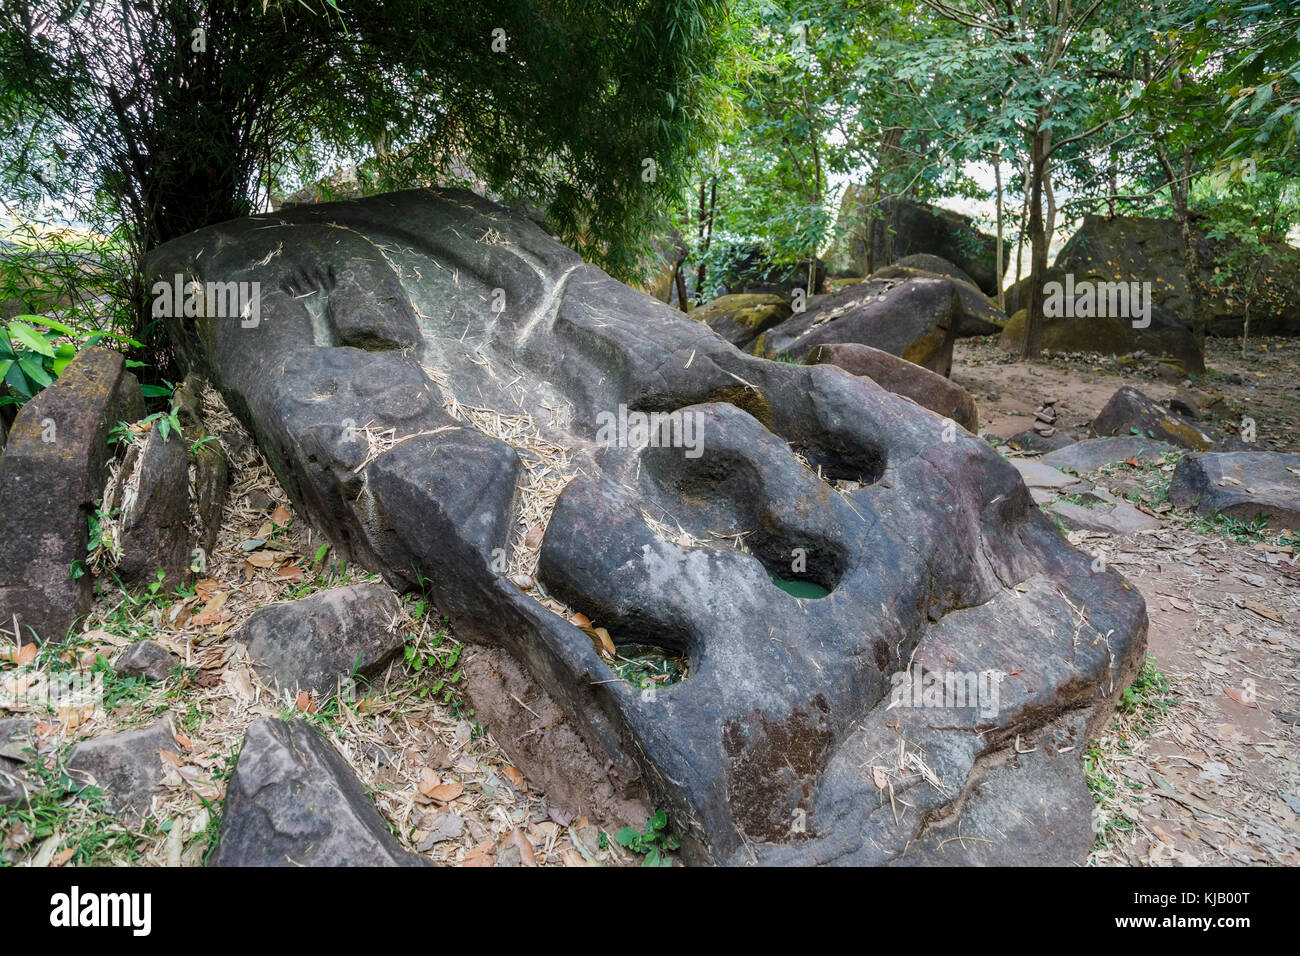 Le crocodile à la pierre d'anciennes ruines de l'Hindou Khmer pré-angkorienne (maintenant bouddhiste) temple de Wat Phou, province de Champasak, au Laos, en Asie du sud-est Banque D'Images